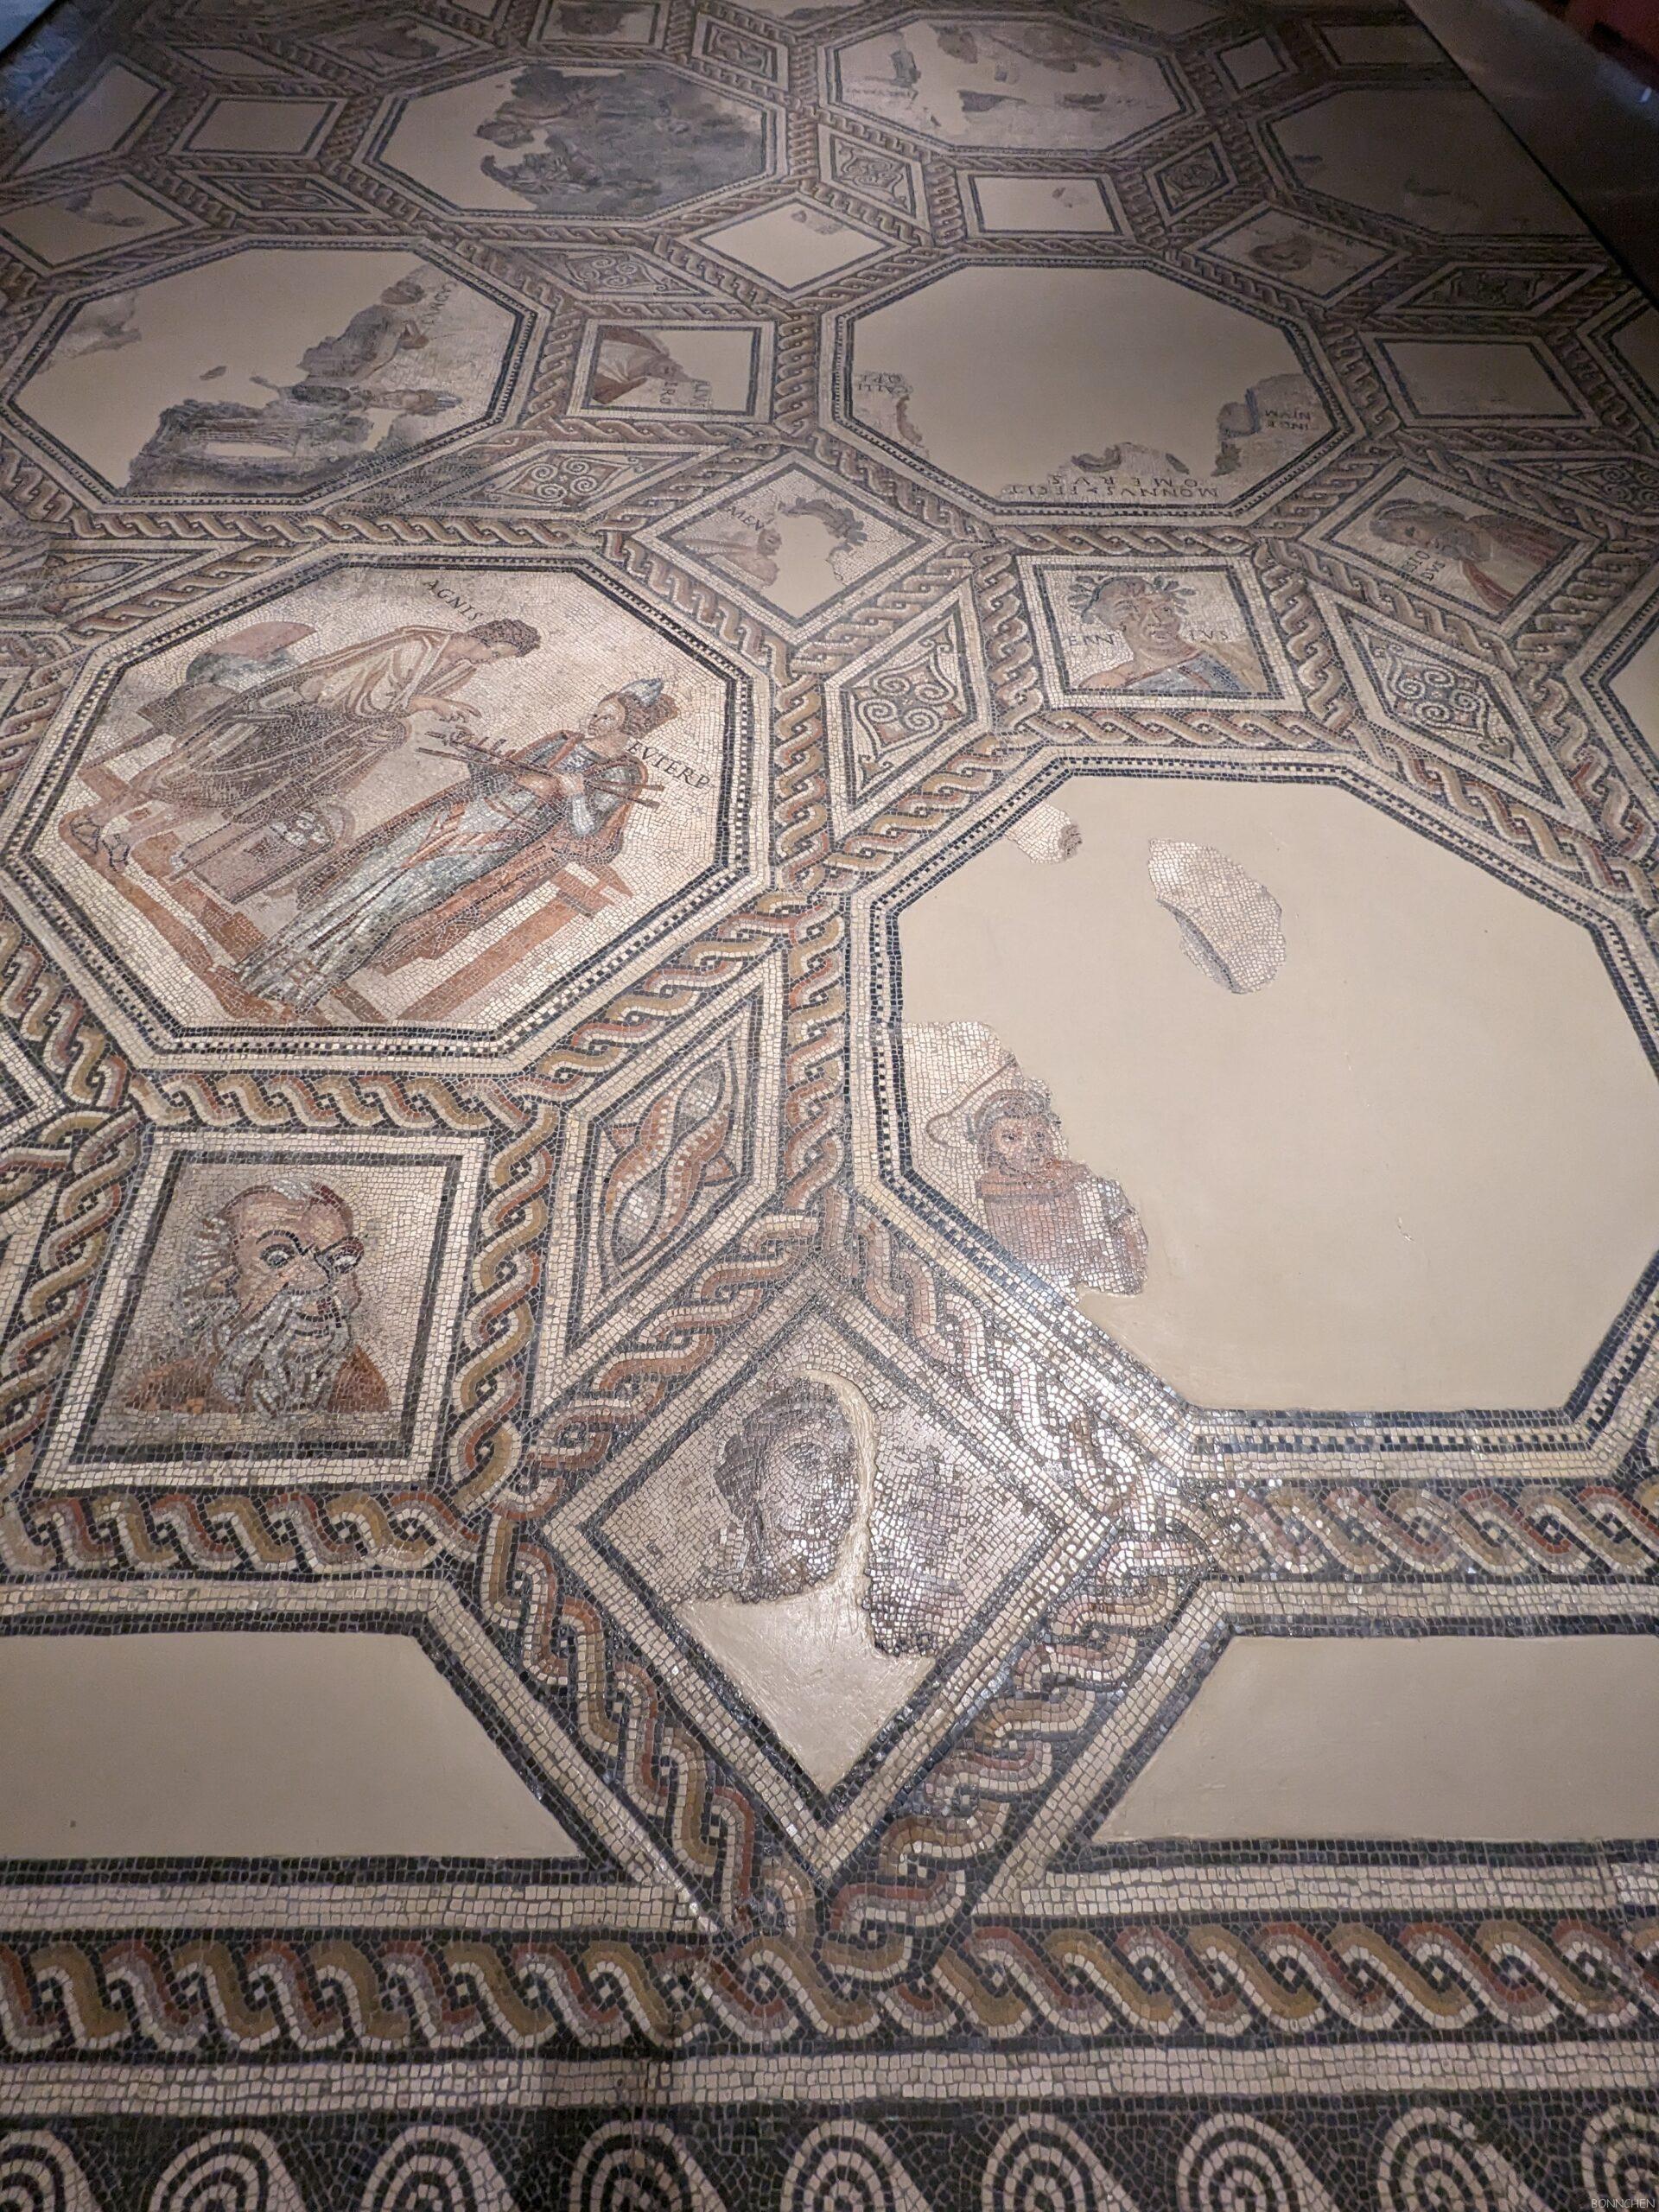 054 rheinisches landesmuseum trier mosaik fliesen scaled